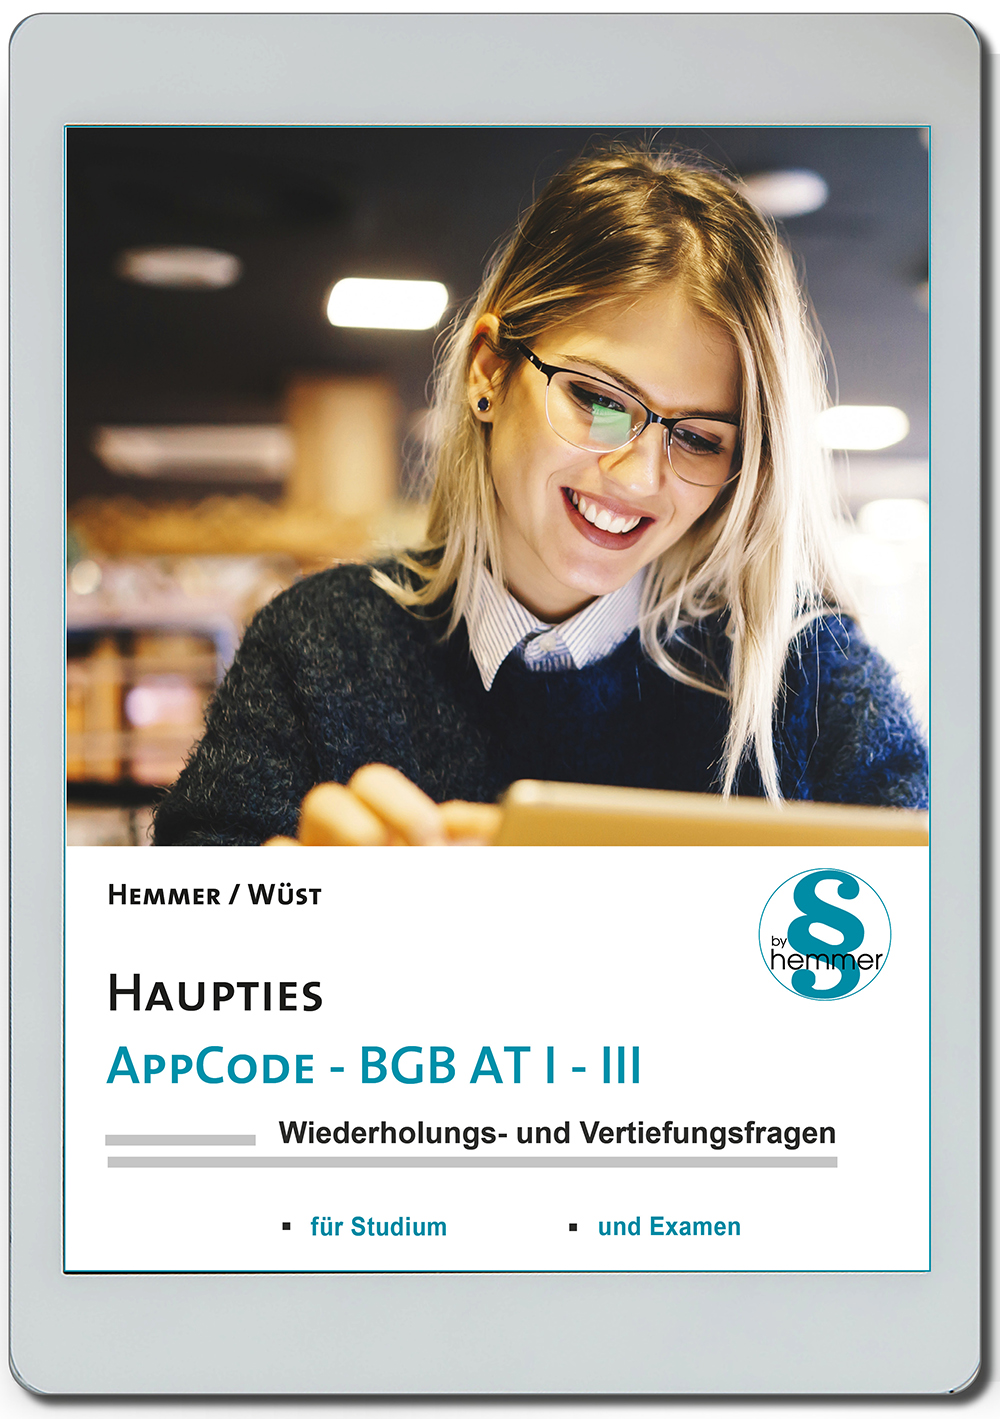 AppCode - haupties - BGB AT I - III